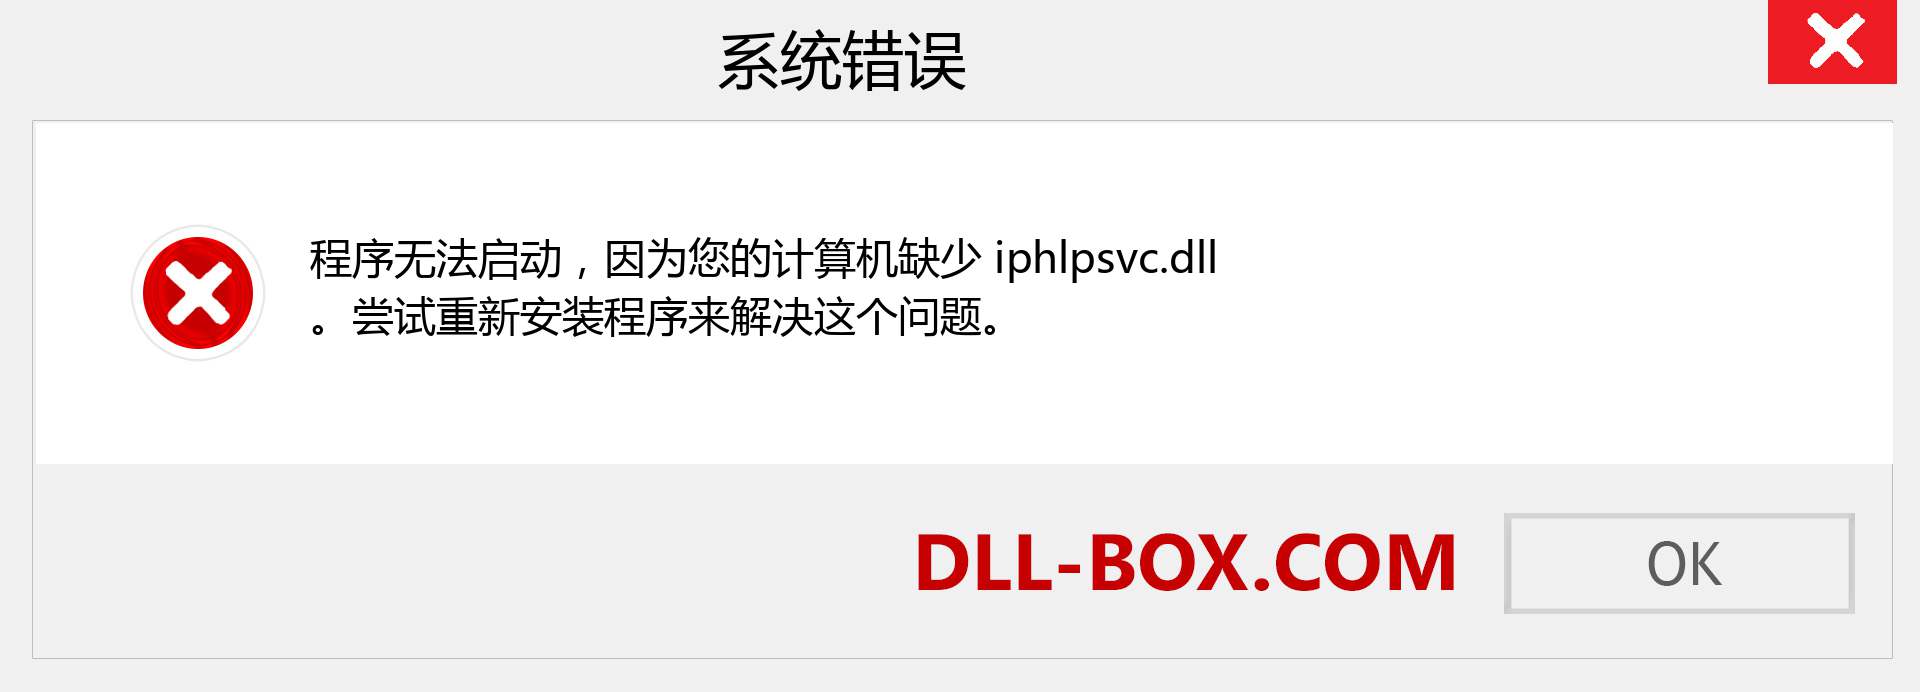 iphlpsvc.dll 文件丢失？。 适用于 Windows 7、8、10 的下载 - 修复 Windows、照片、图像上的 iphlpsvc dll 丢失错误